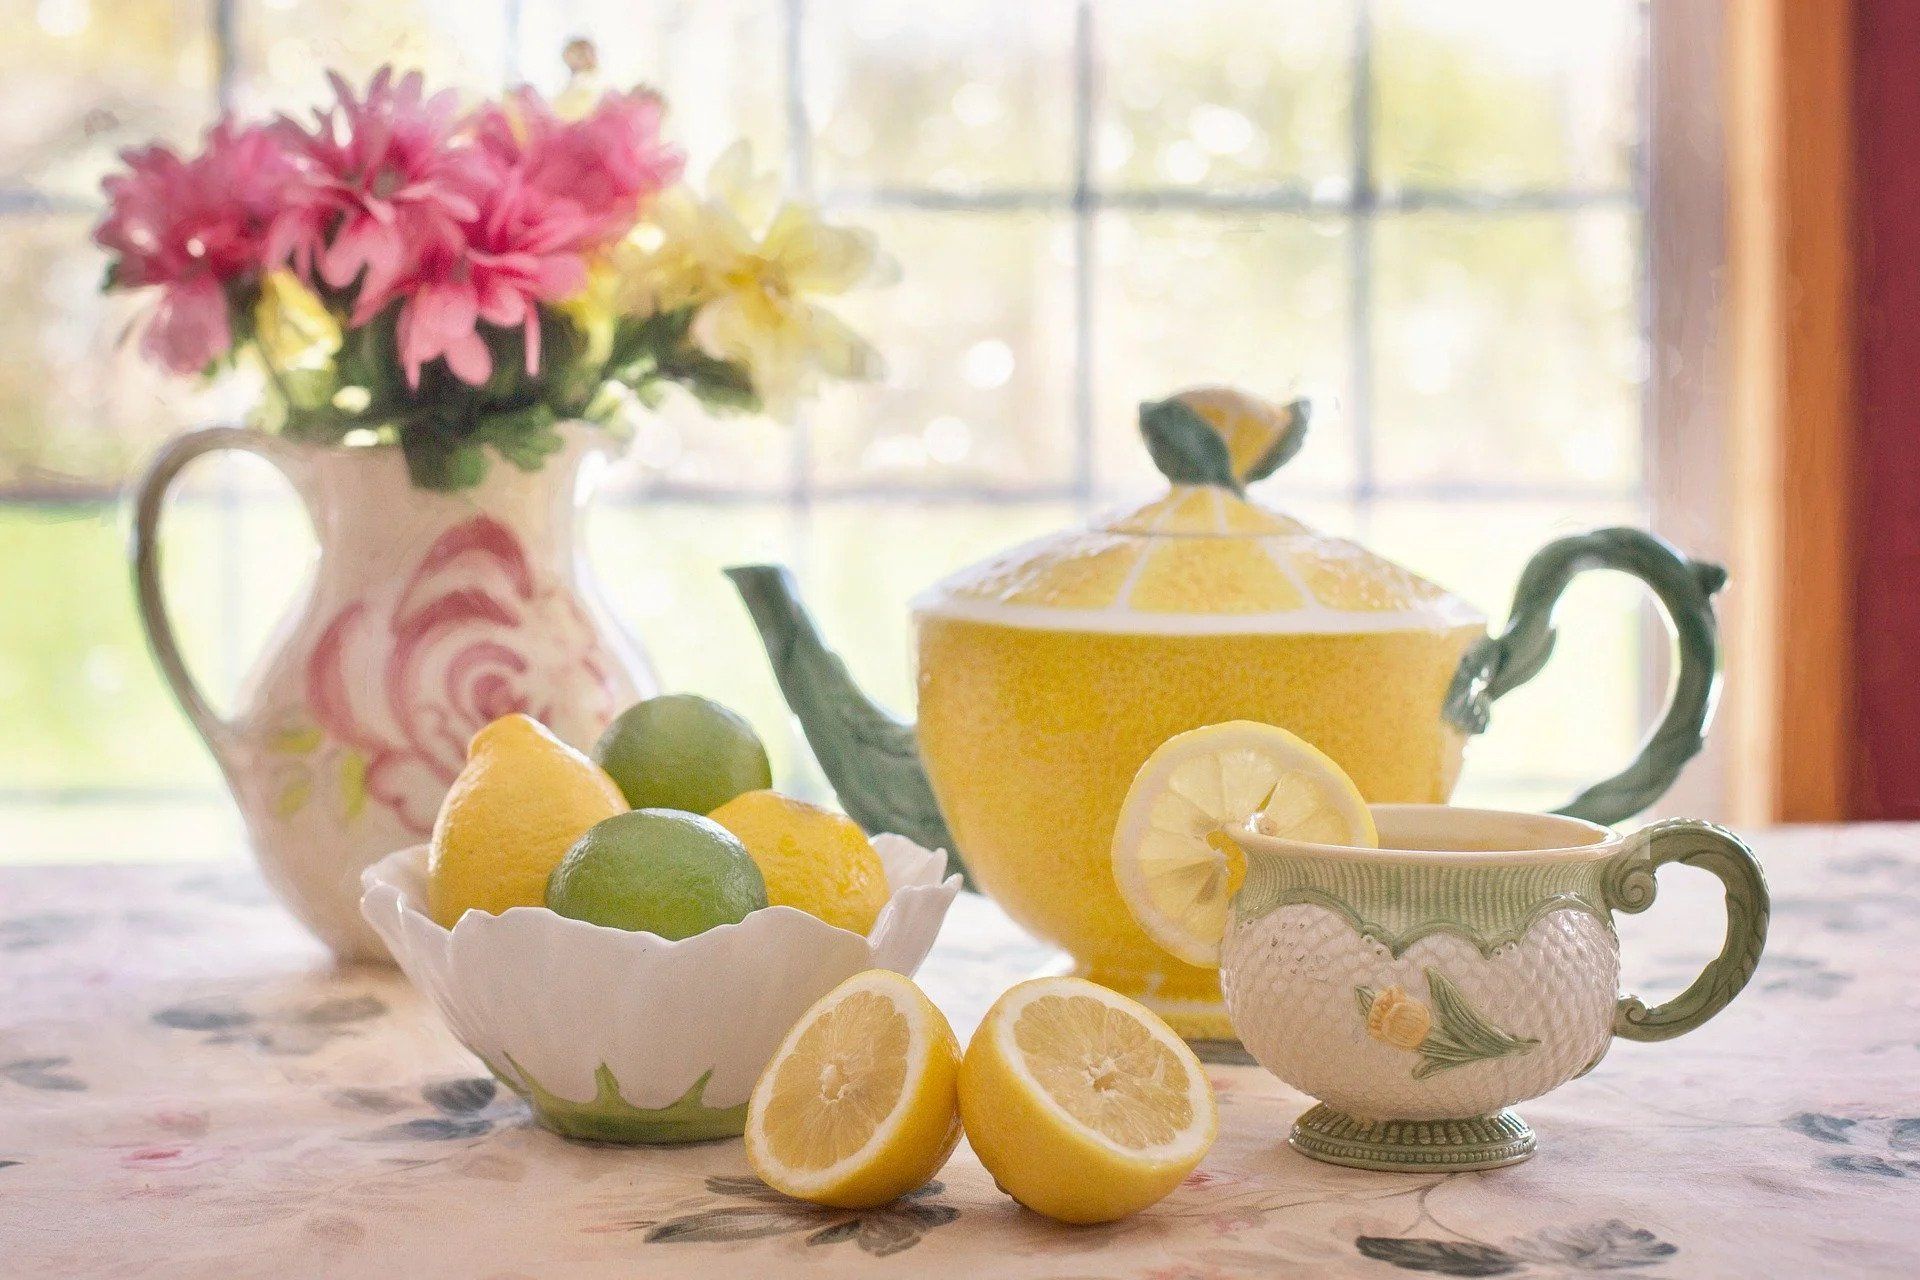 Lemon and Lime Tea set